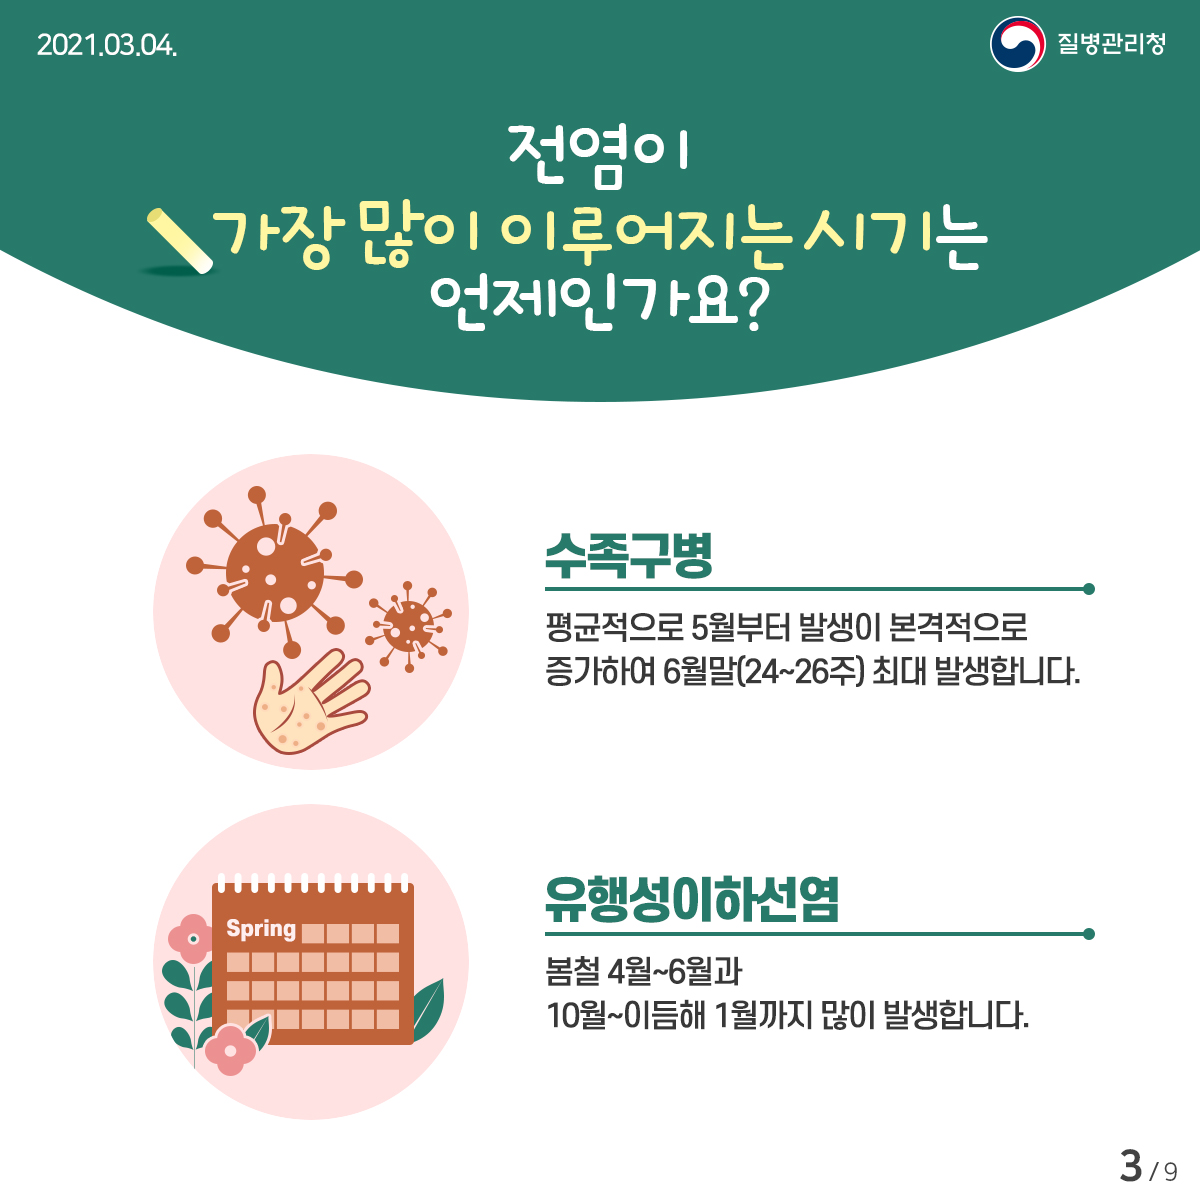 이달의건강소식_수족구_유행성이하선염 카드뉴스 (3)